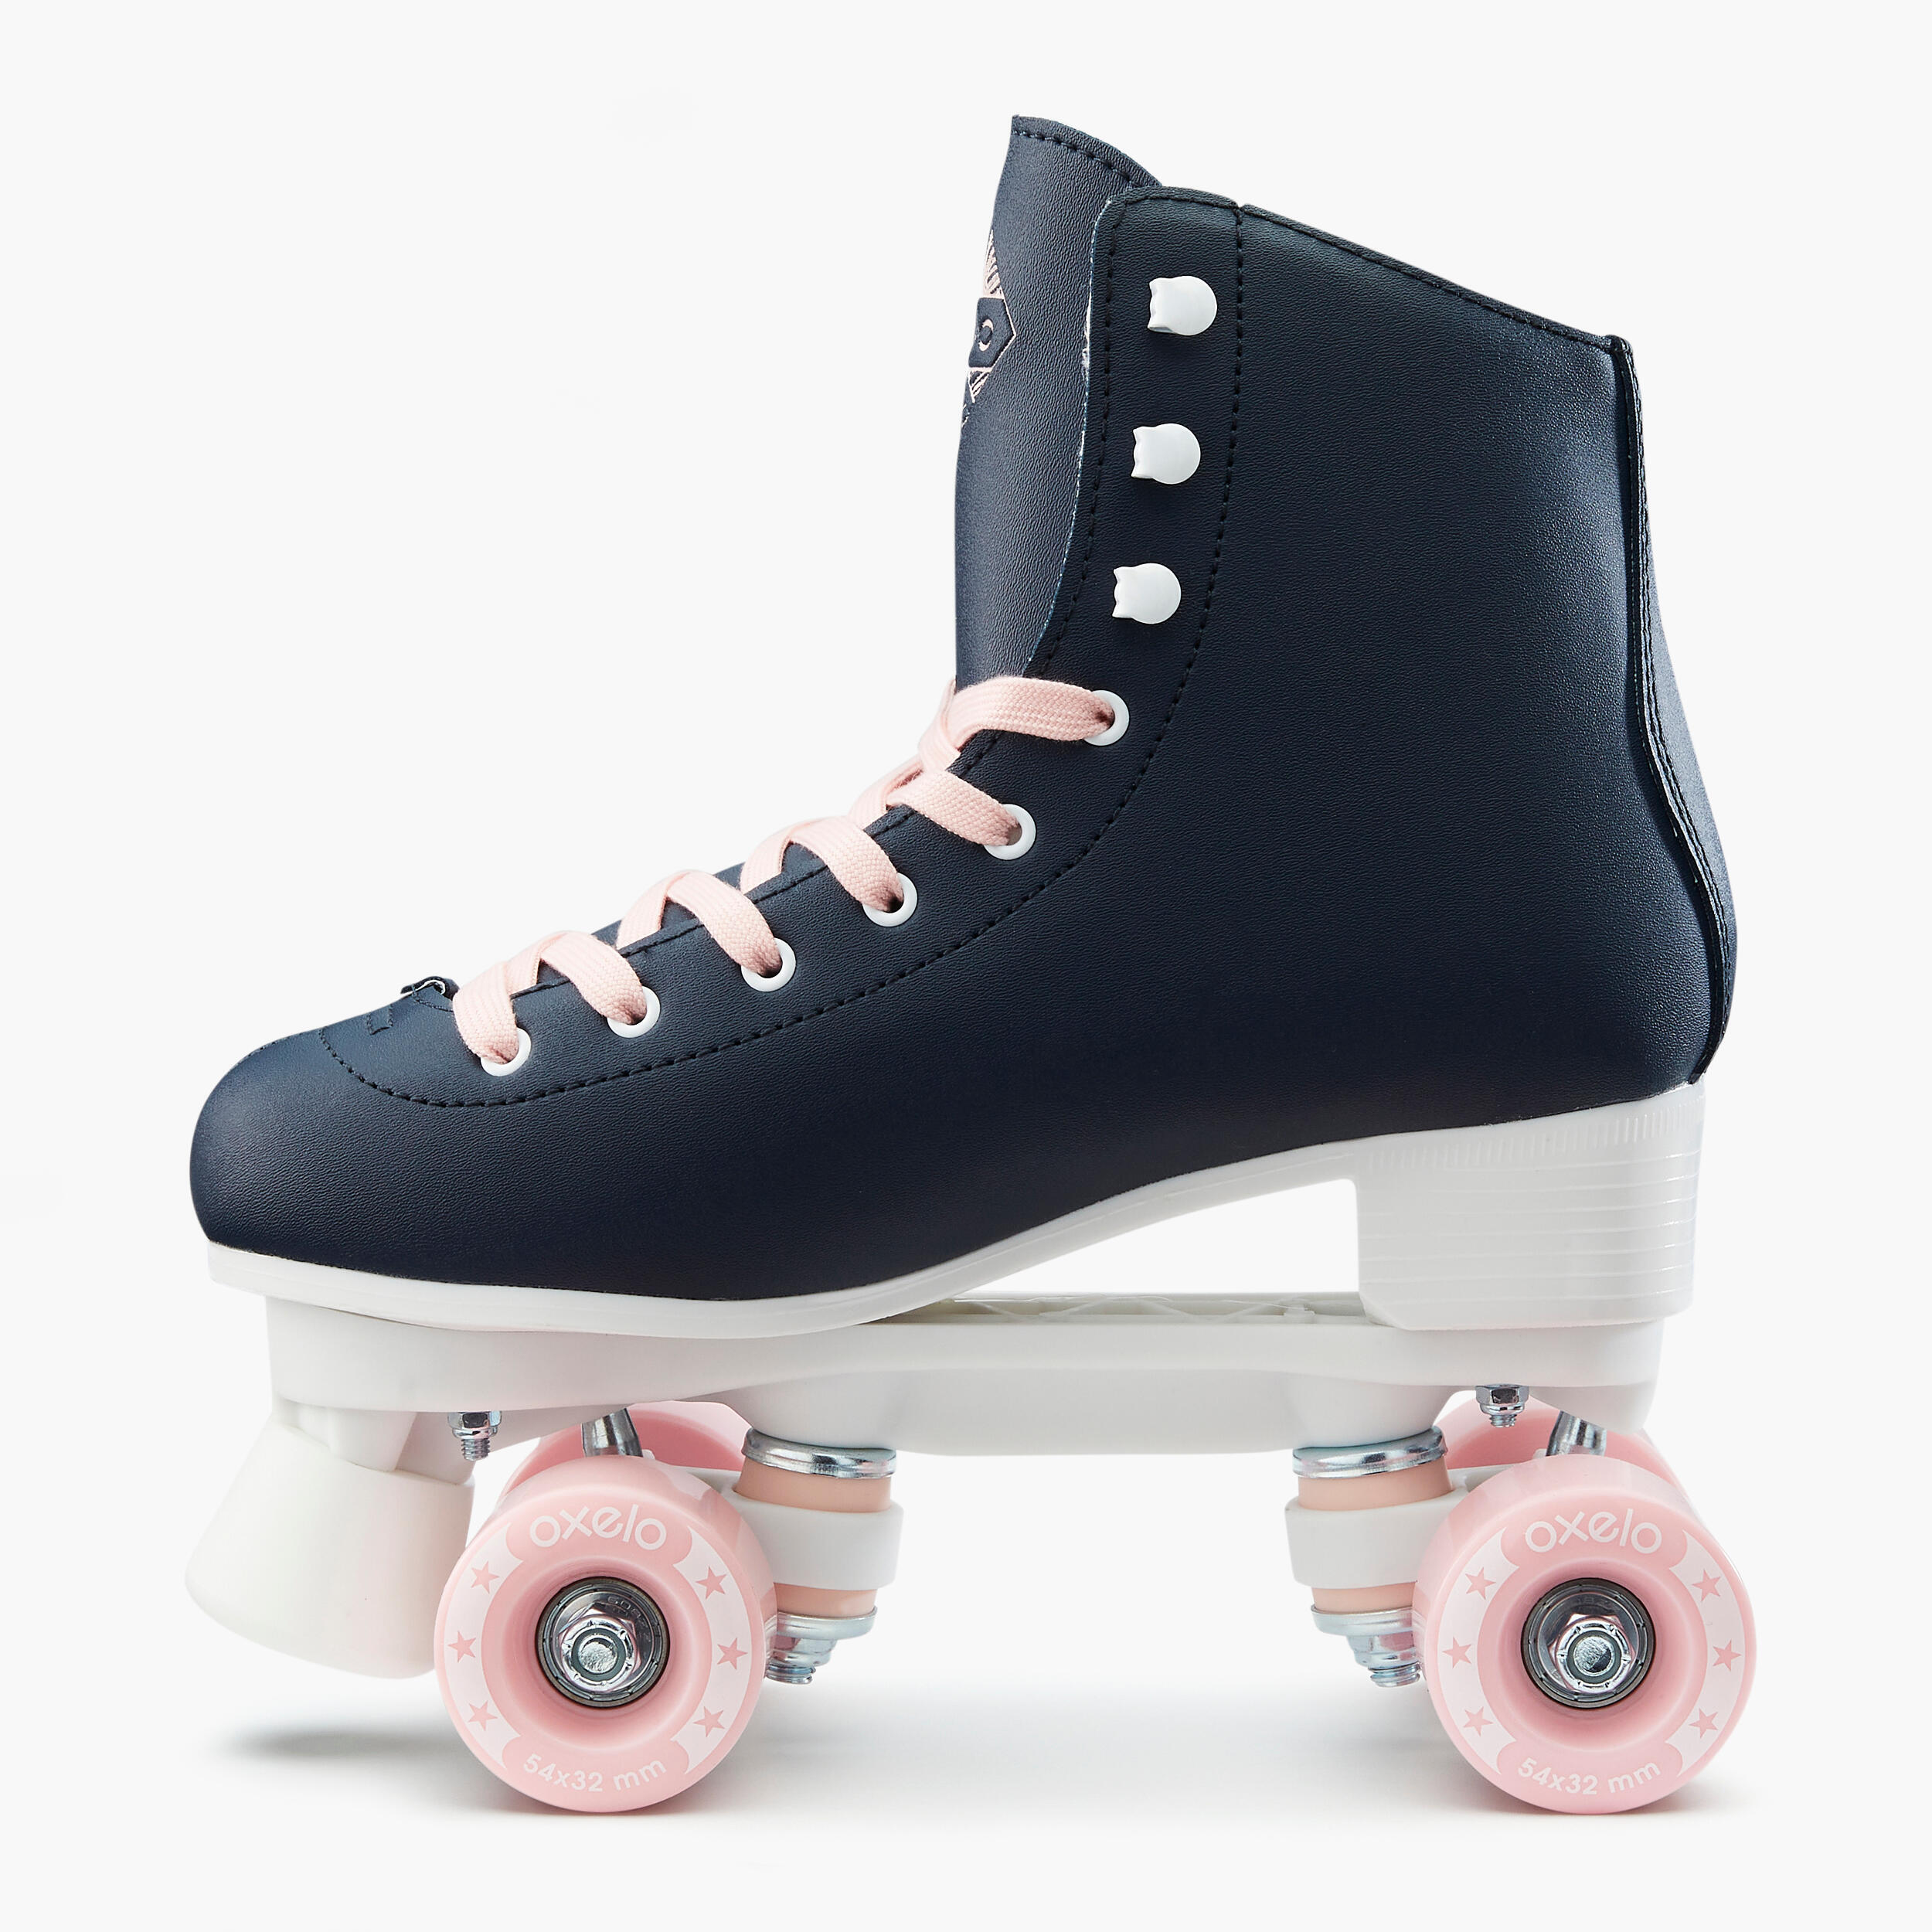 Kids' and Adult Artistic Roller Skating Quad Skates 100 - Navy Blue 3/9